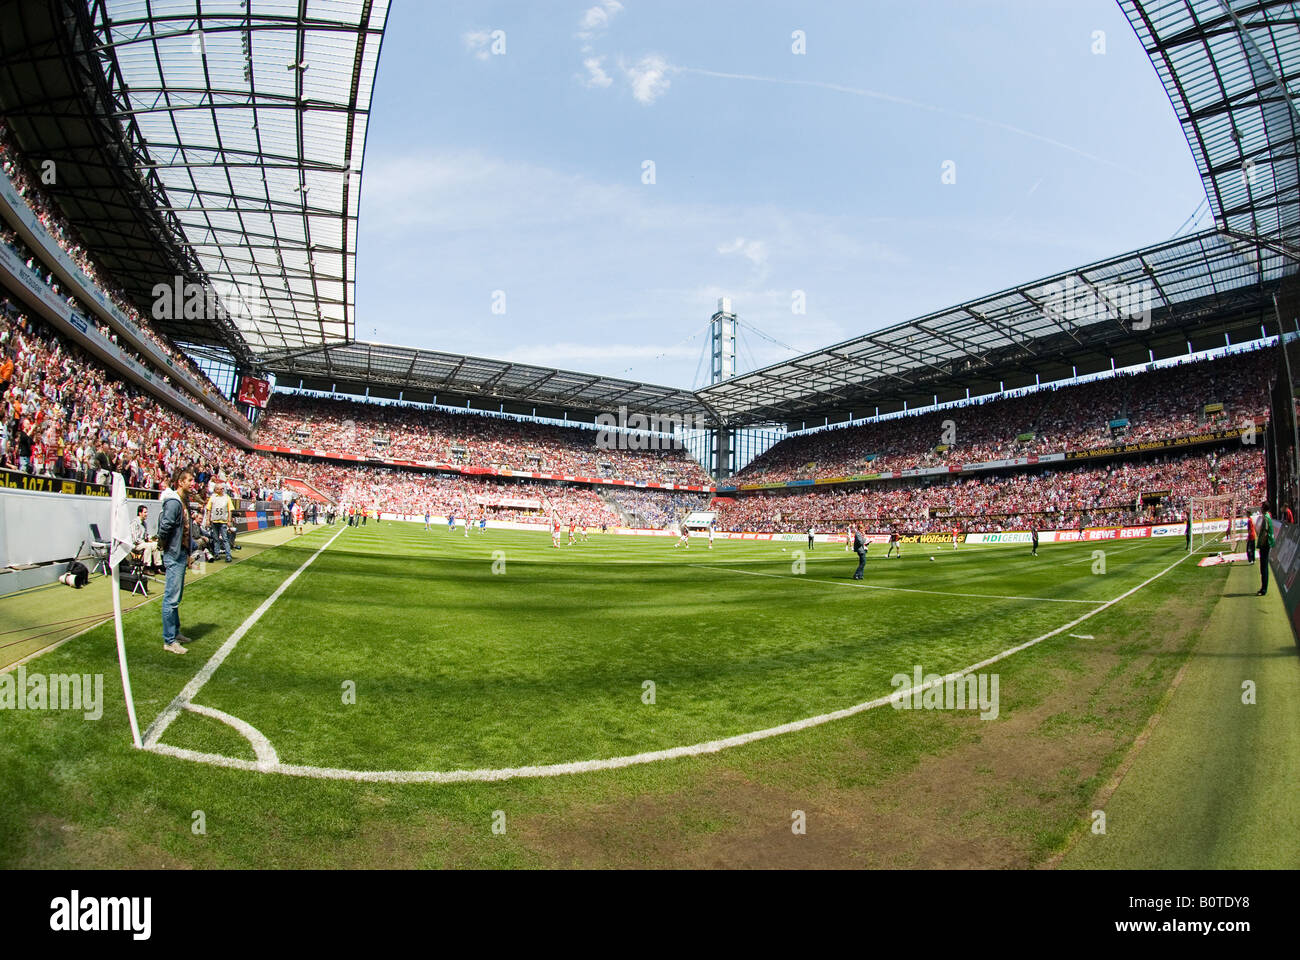 Ecke im gefüllten Fußballstadion vor dem Start, Köln, Deutschland Stockfoto